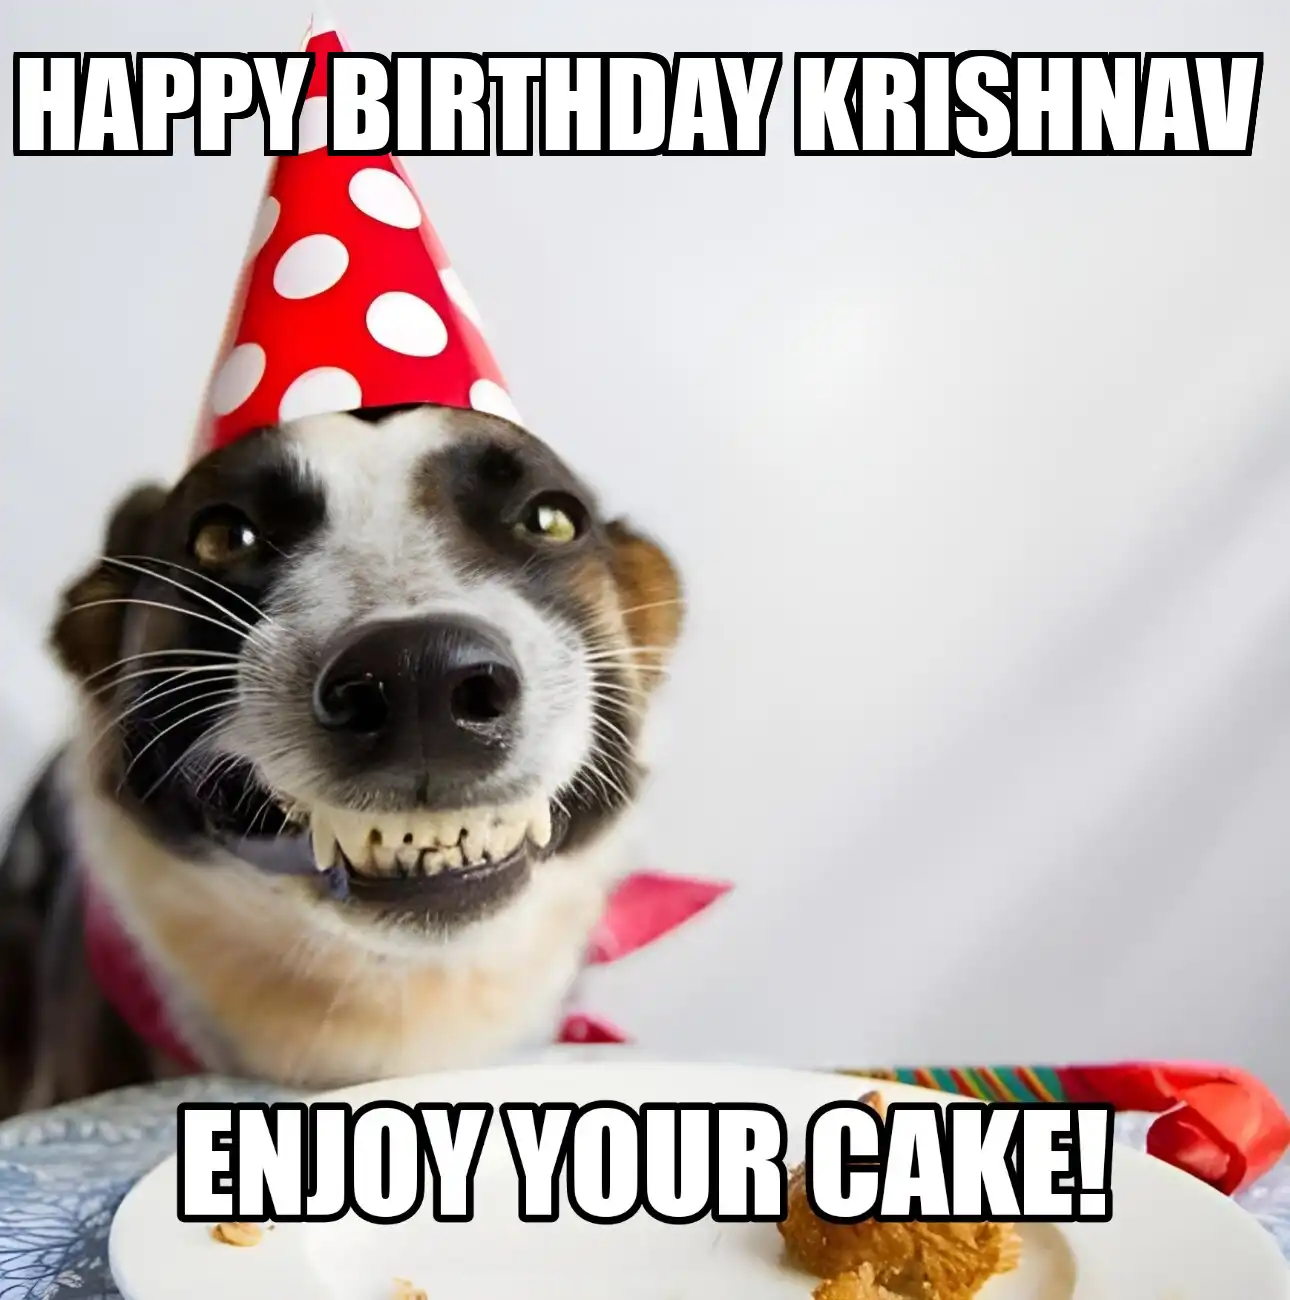 Happy Birthday Krishnav Enjoy Your Cake Dog Meme